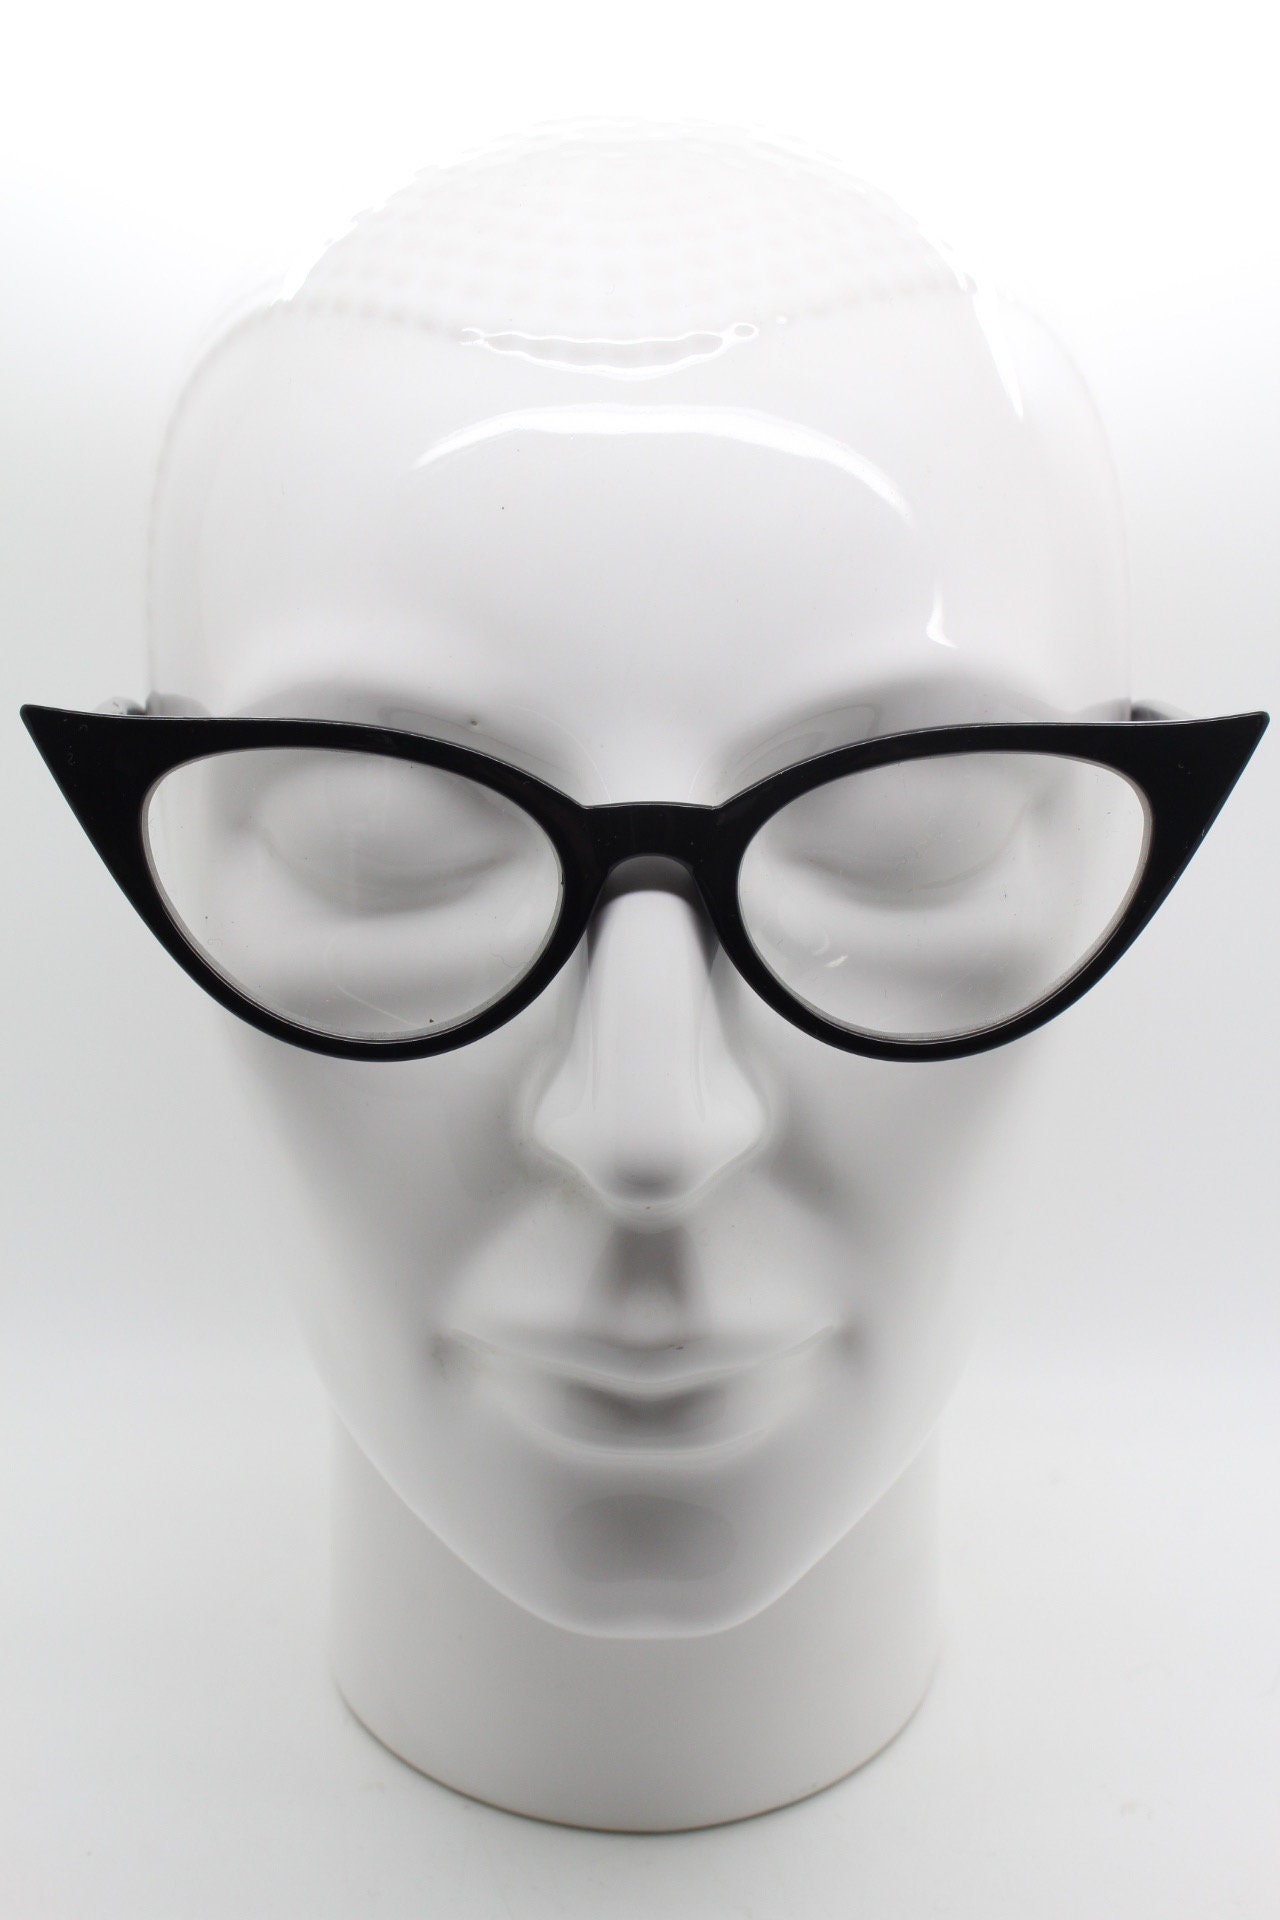 Y2K Pointed Cat Eye Glasses. Vintage Black Slender Clear Lens | Etsy